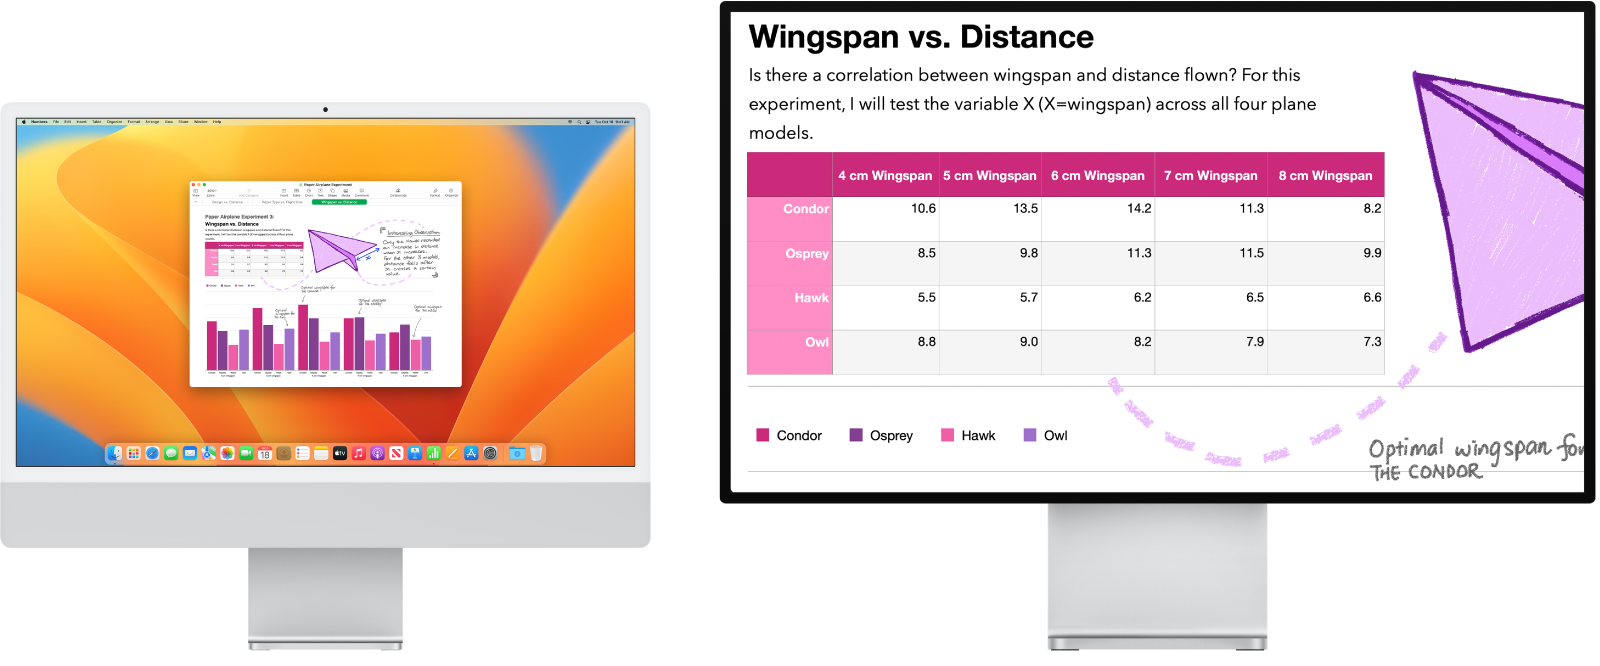 Sekundárny displej, na ktorom je aktívna funkcia Zoom Display, zatiaľ čo na displeji iMacu zostáva obrazovka v štandardnej veľkosti.